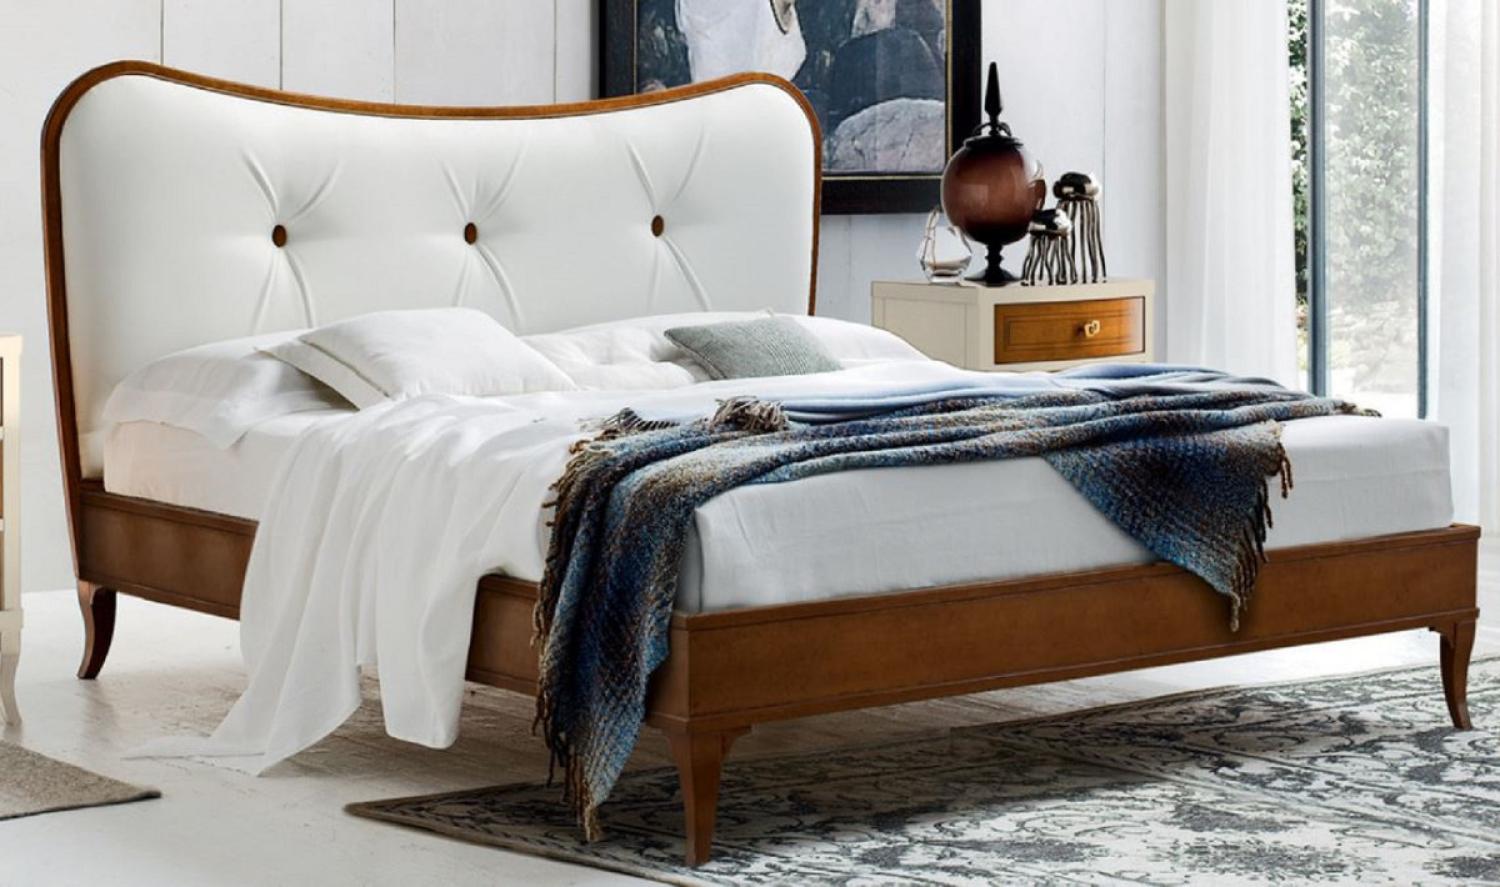 Casa Padrino Luxus Biedermeier Doppelbett Braun / Weiß 182 x 214 x H. 120 cm - Massivholz Bett mit Echtleder Kopfteil - Schlafzimmer Möbel - Luxus Qualität Bild 1